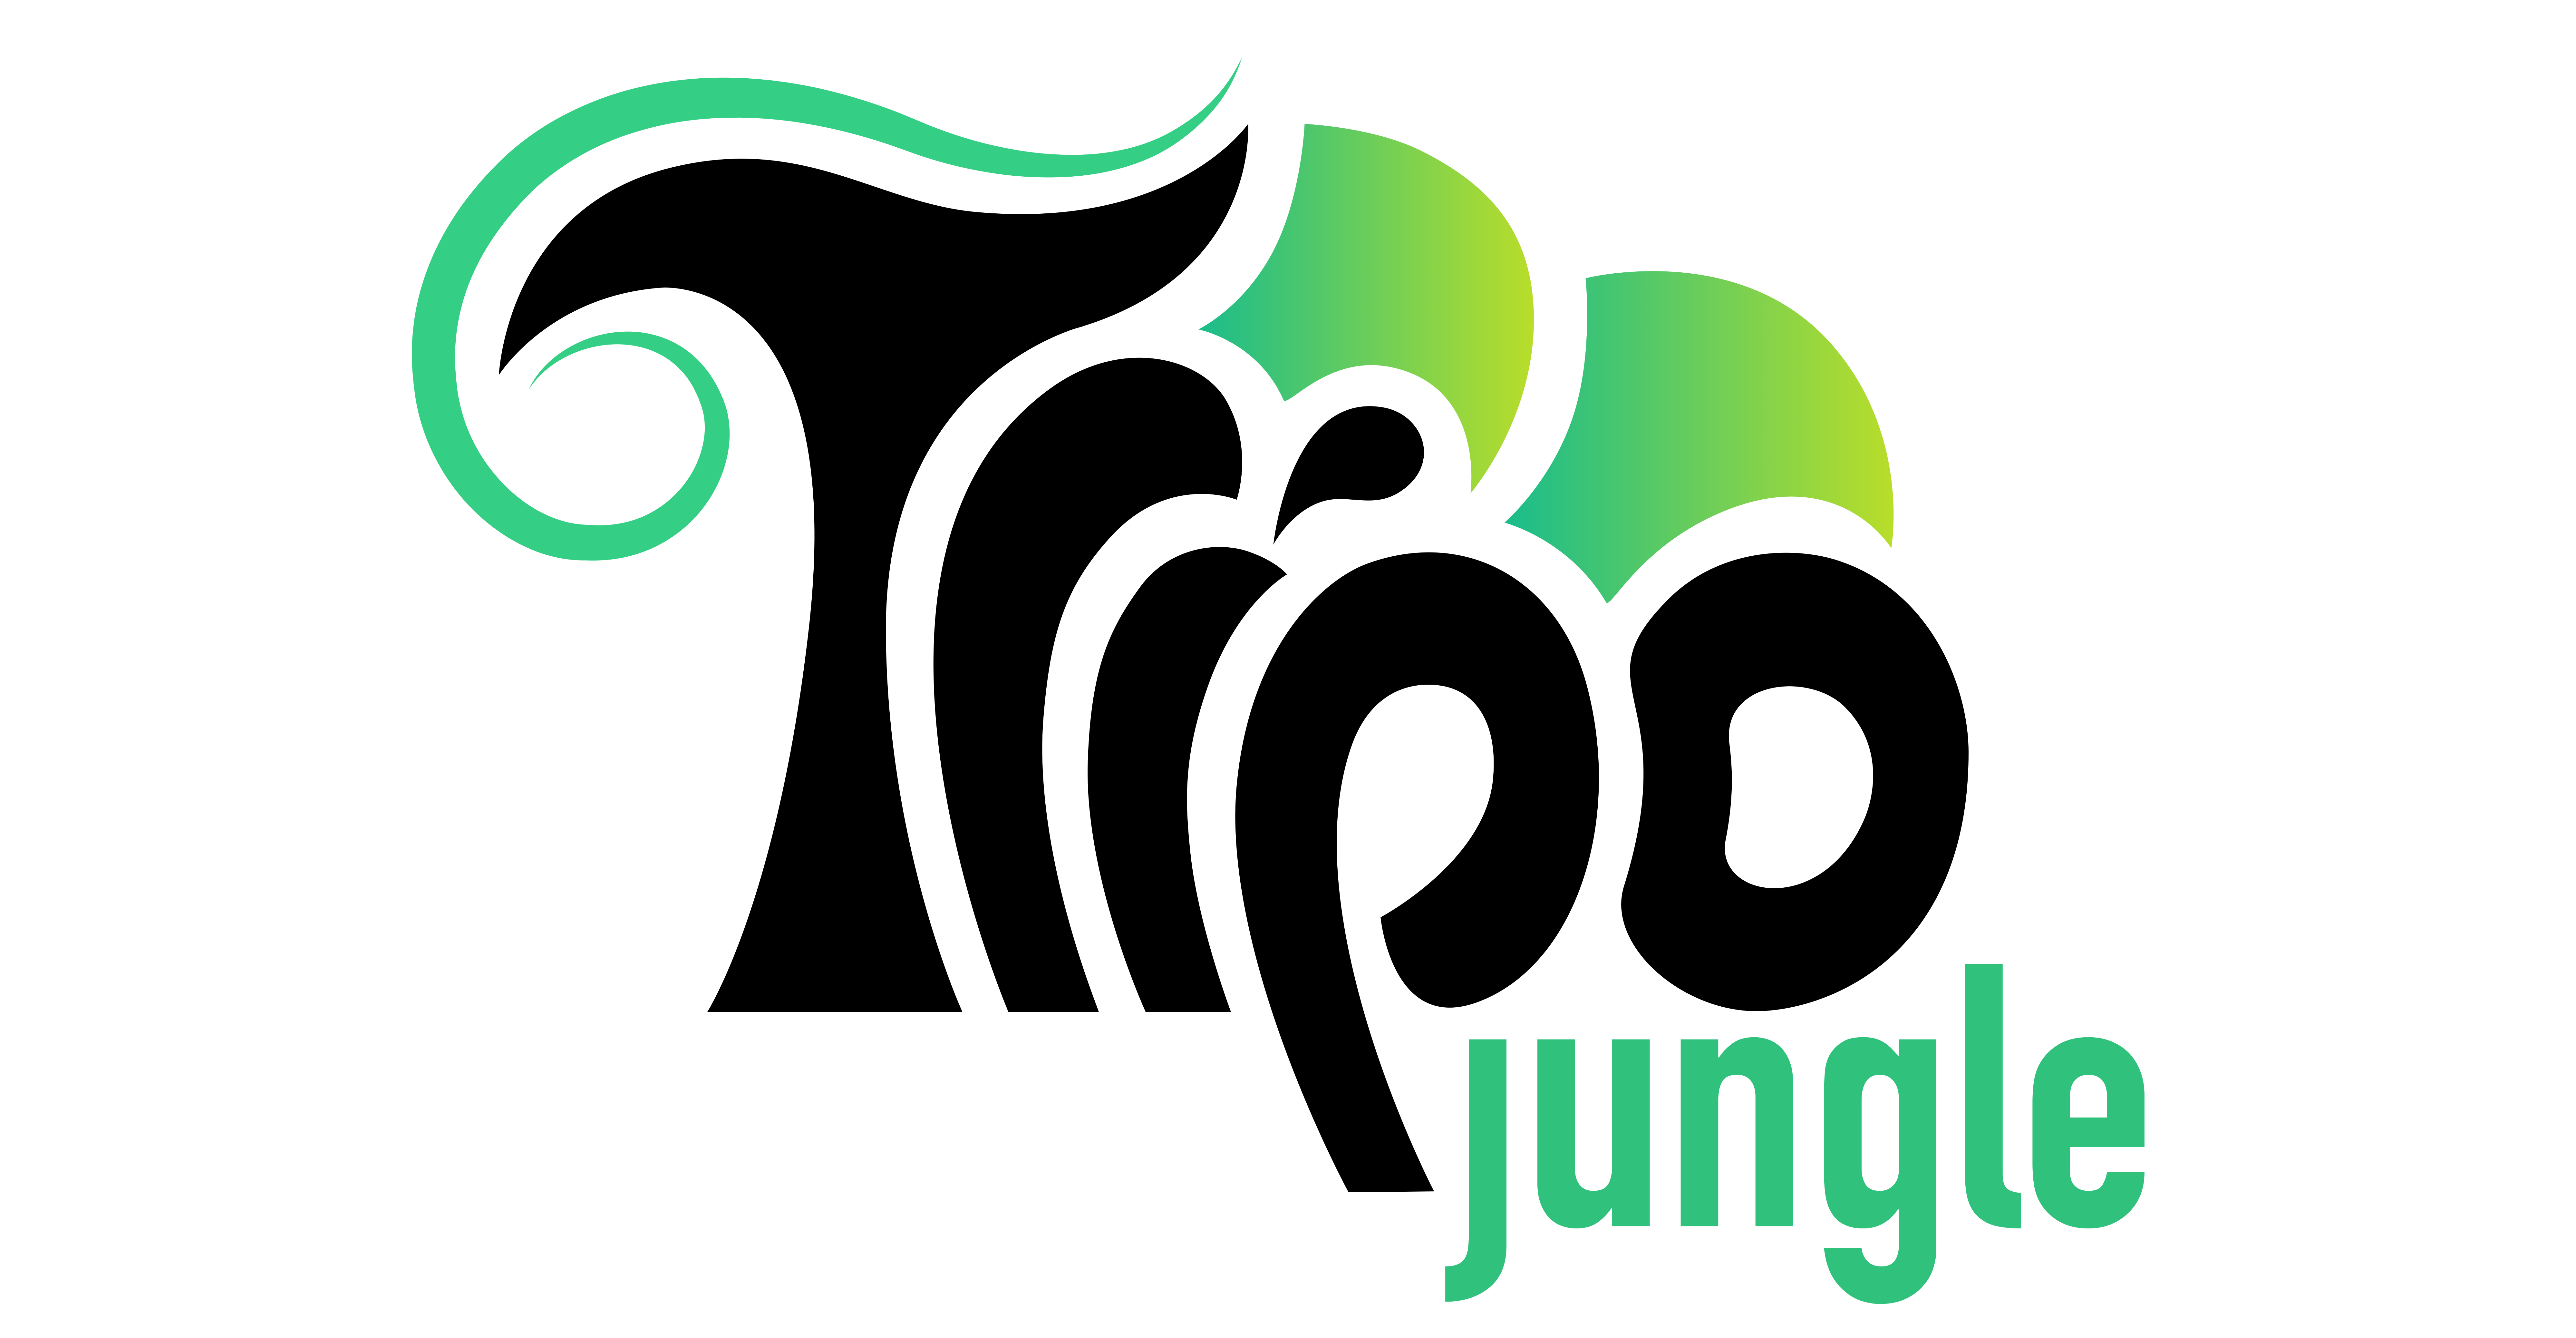 Tripo Jungle